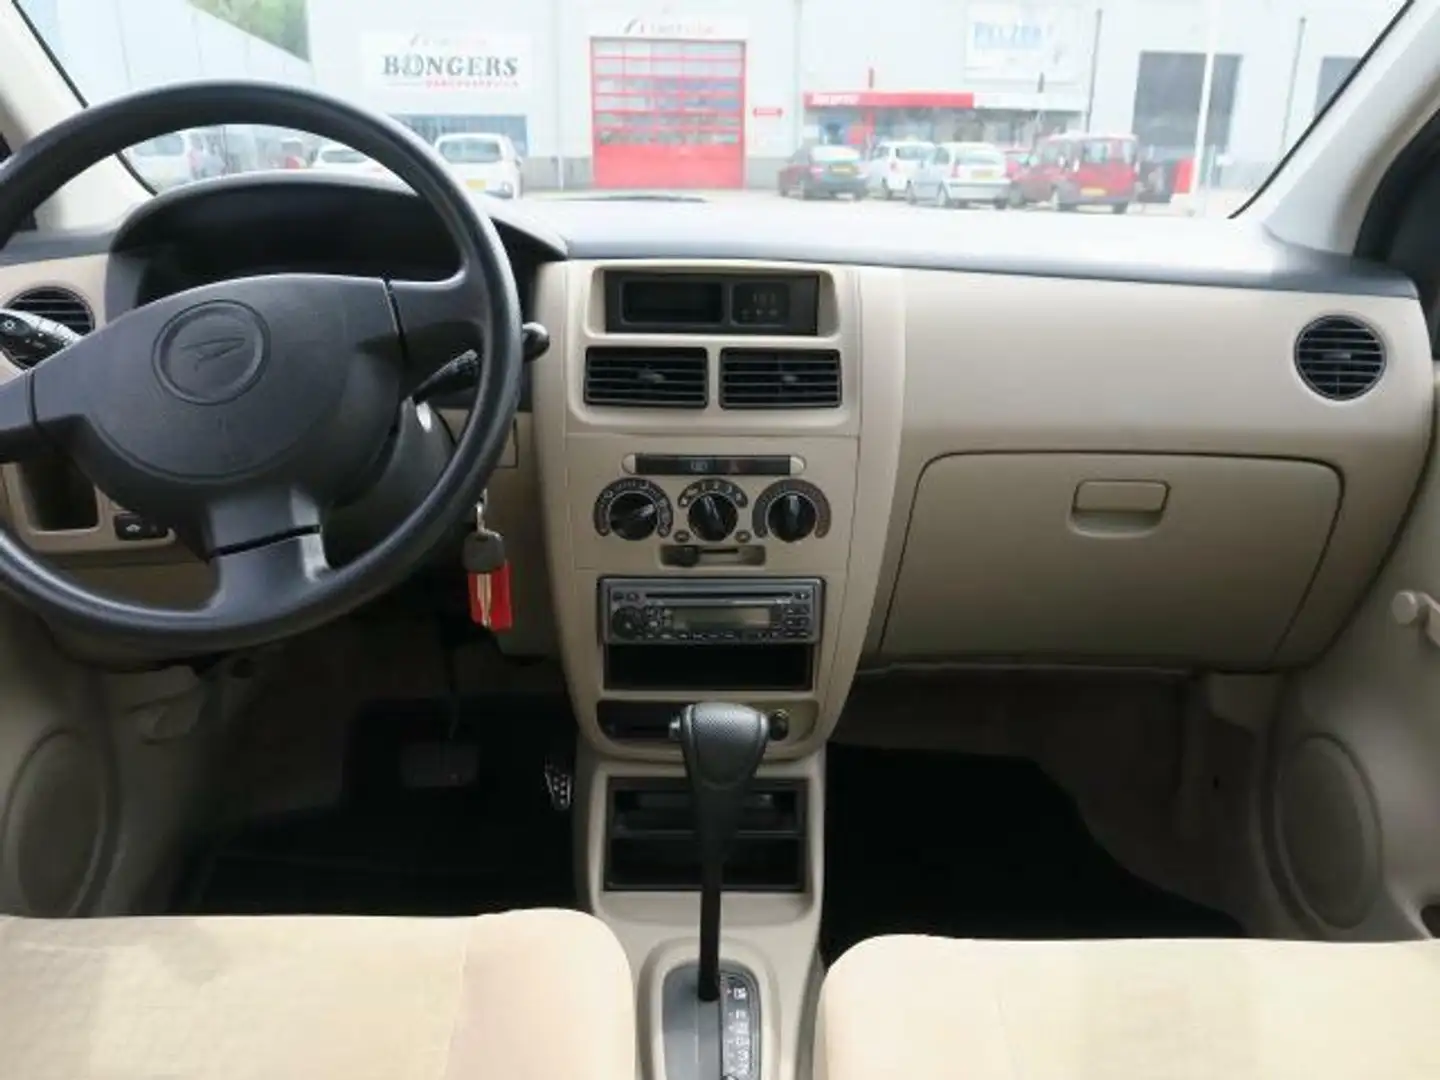 Daihatsu Cuore 1.0-12V Azure, 5 deurs, stuurbekrachtiging. Grey - 2